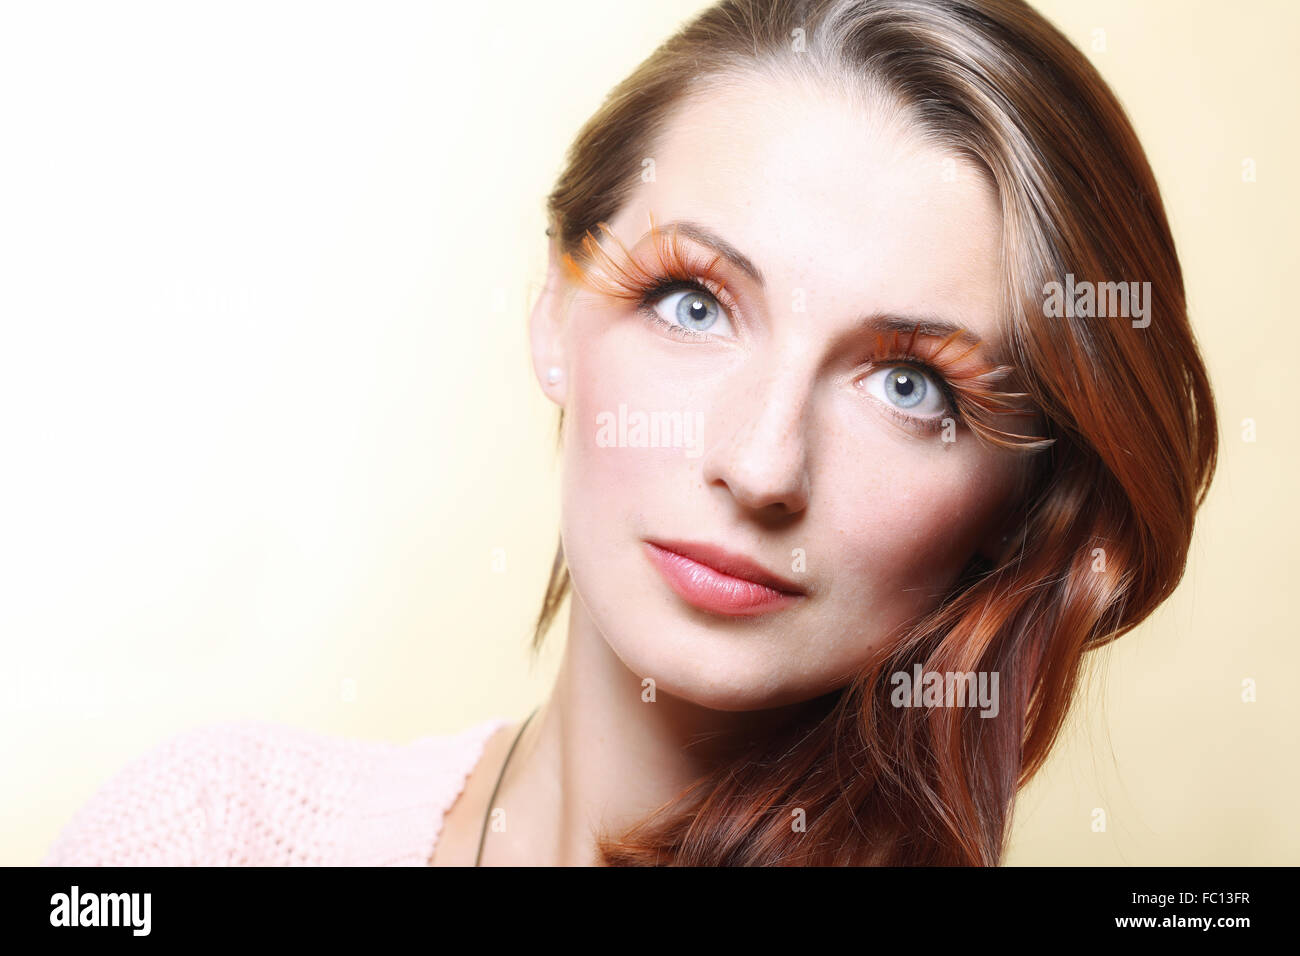 Autumn woman stylish creative make up false eye lashes Stock Photo